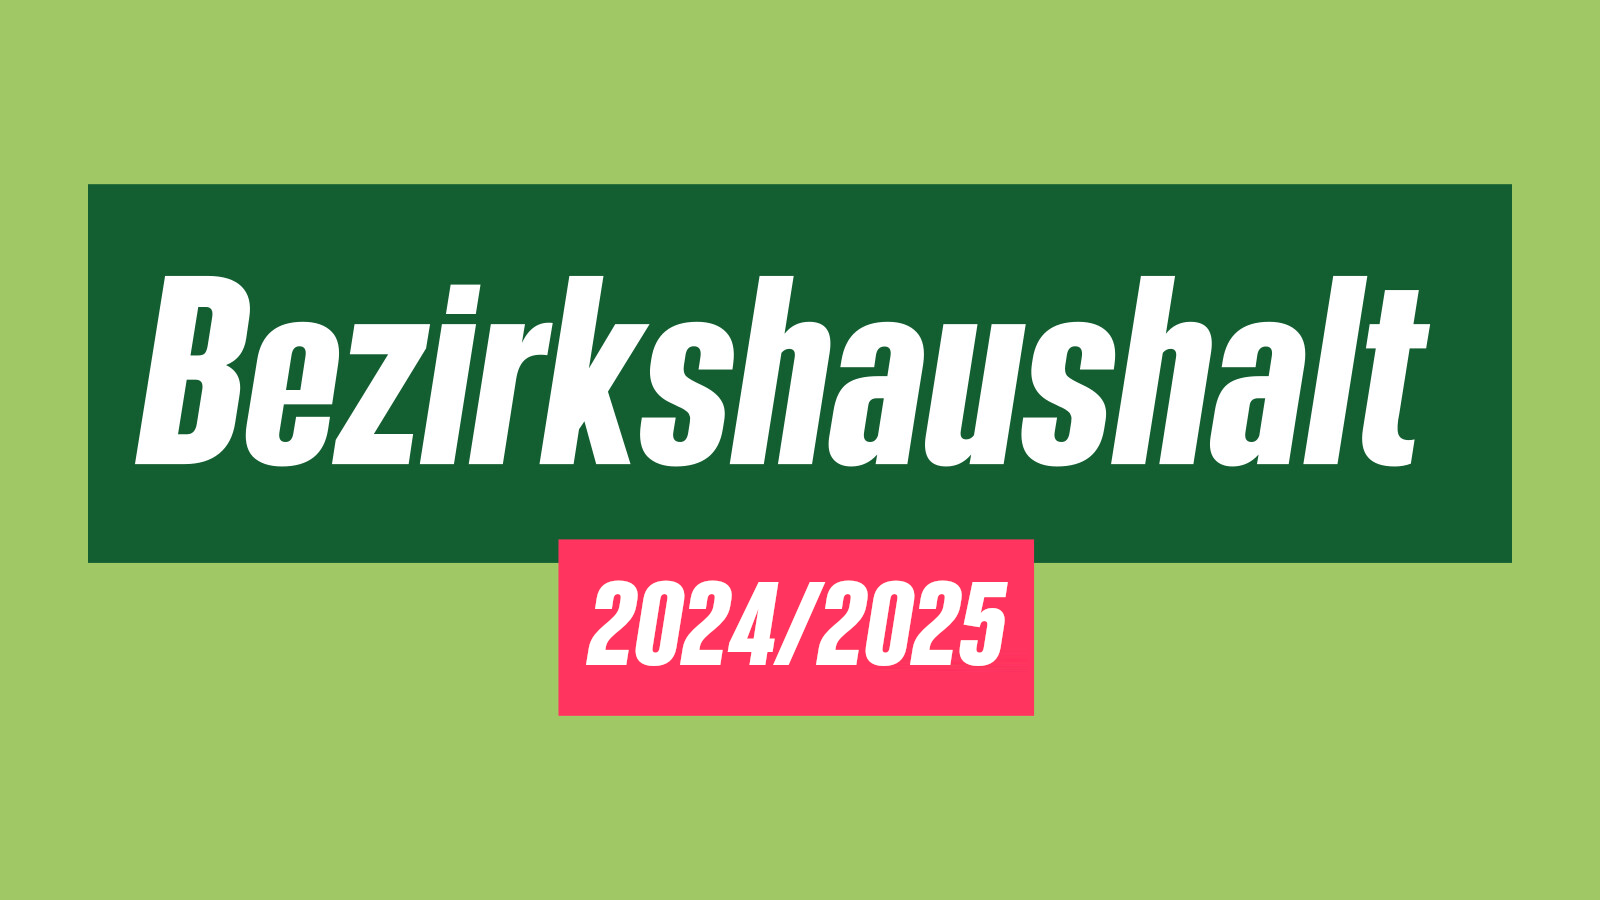 Bezirkshaushalt 2024/2025